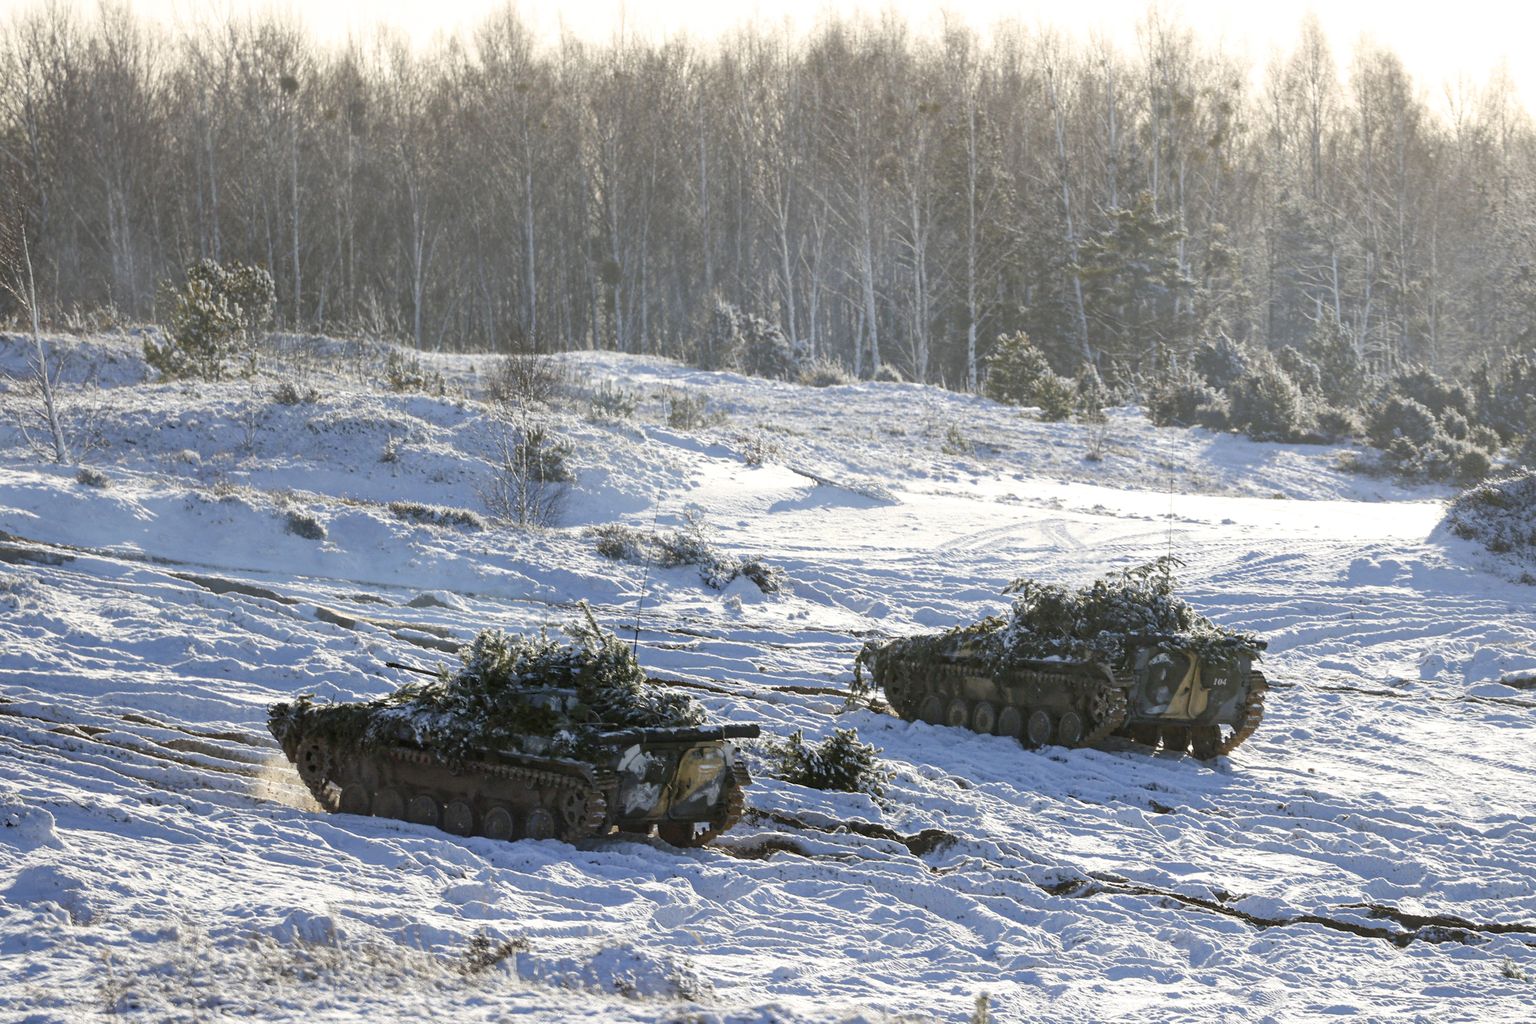 Военные учения в Беларуси